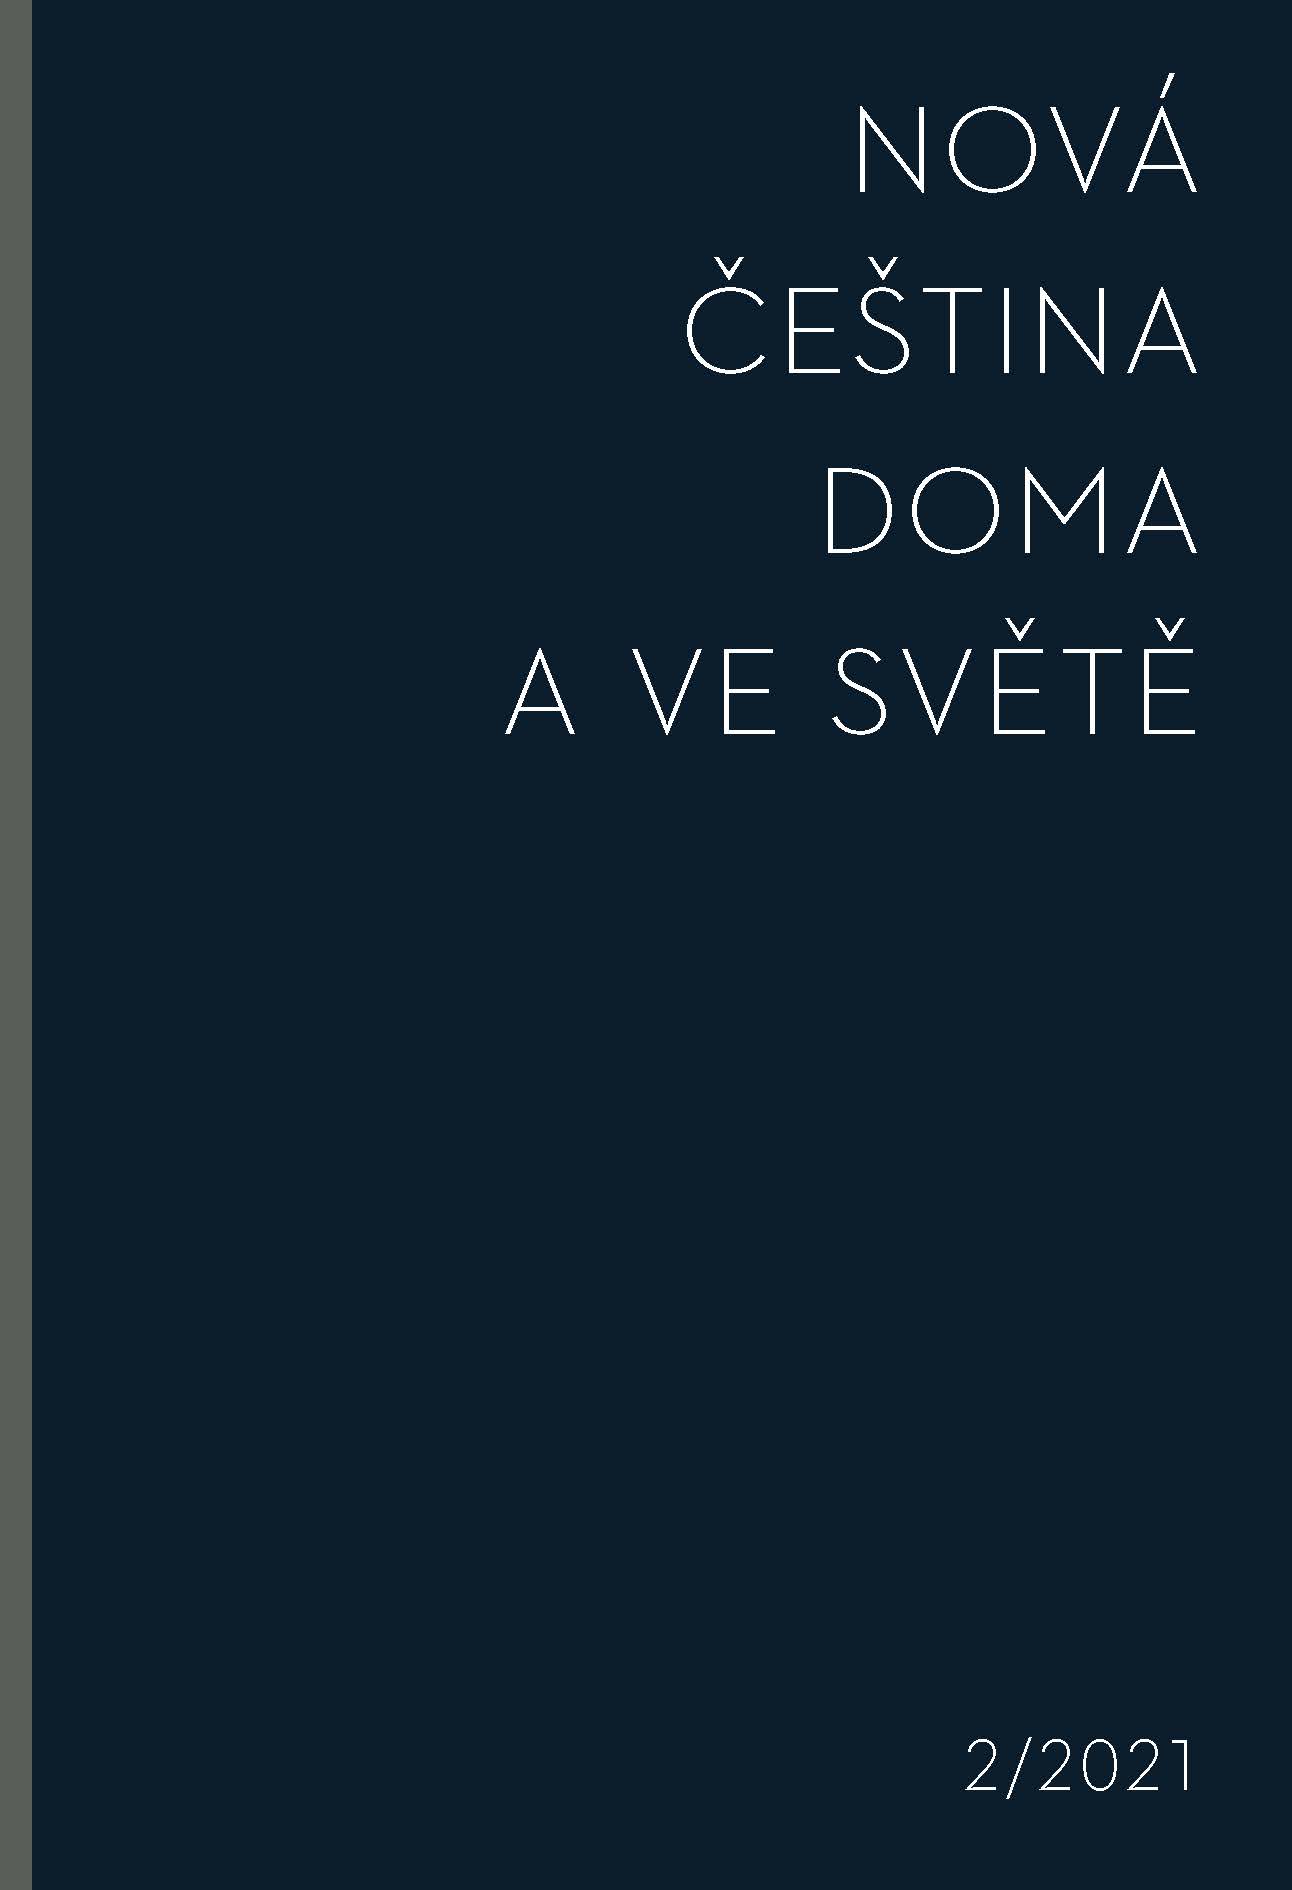 Adrian Zasina (2021): Korpusová cvičebnice pro studenty češtiny jako cizího jazyka. Praha: Karolinum Cover Image